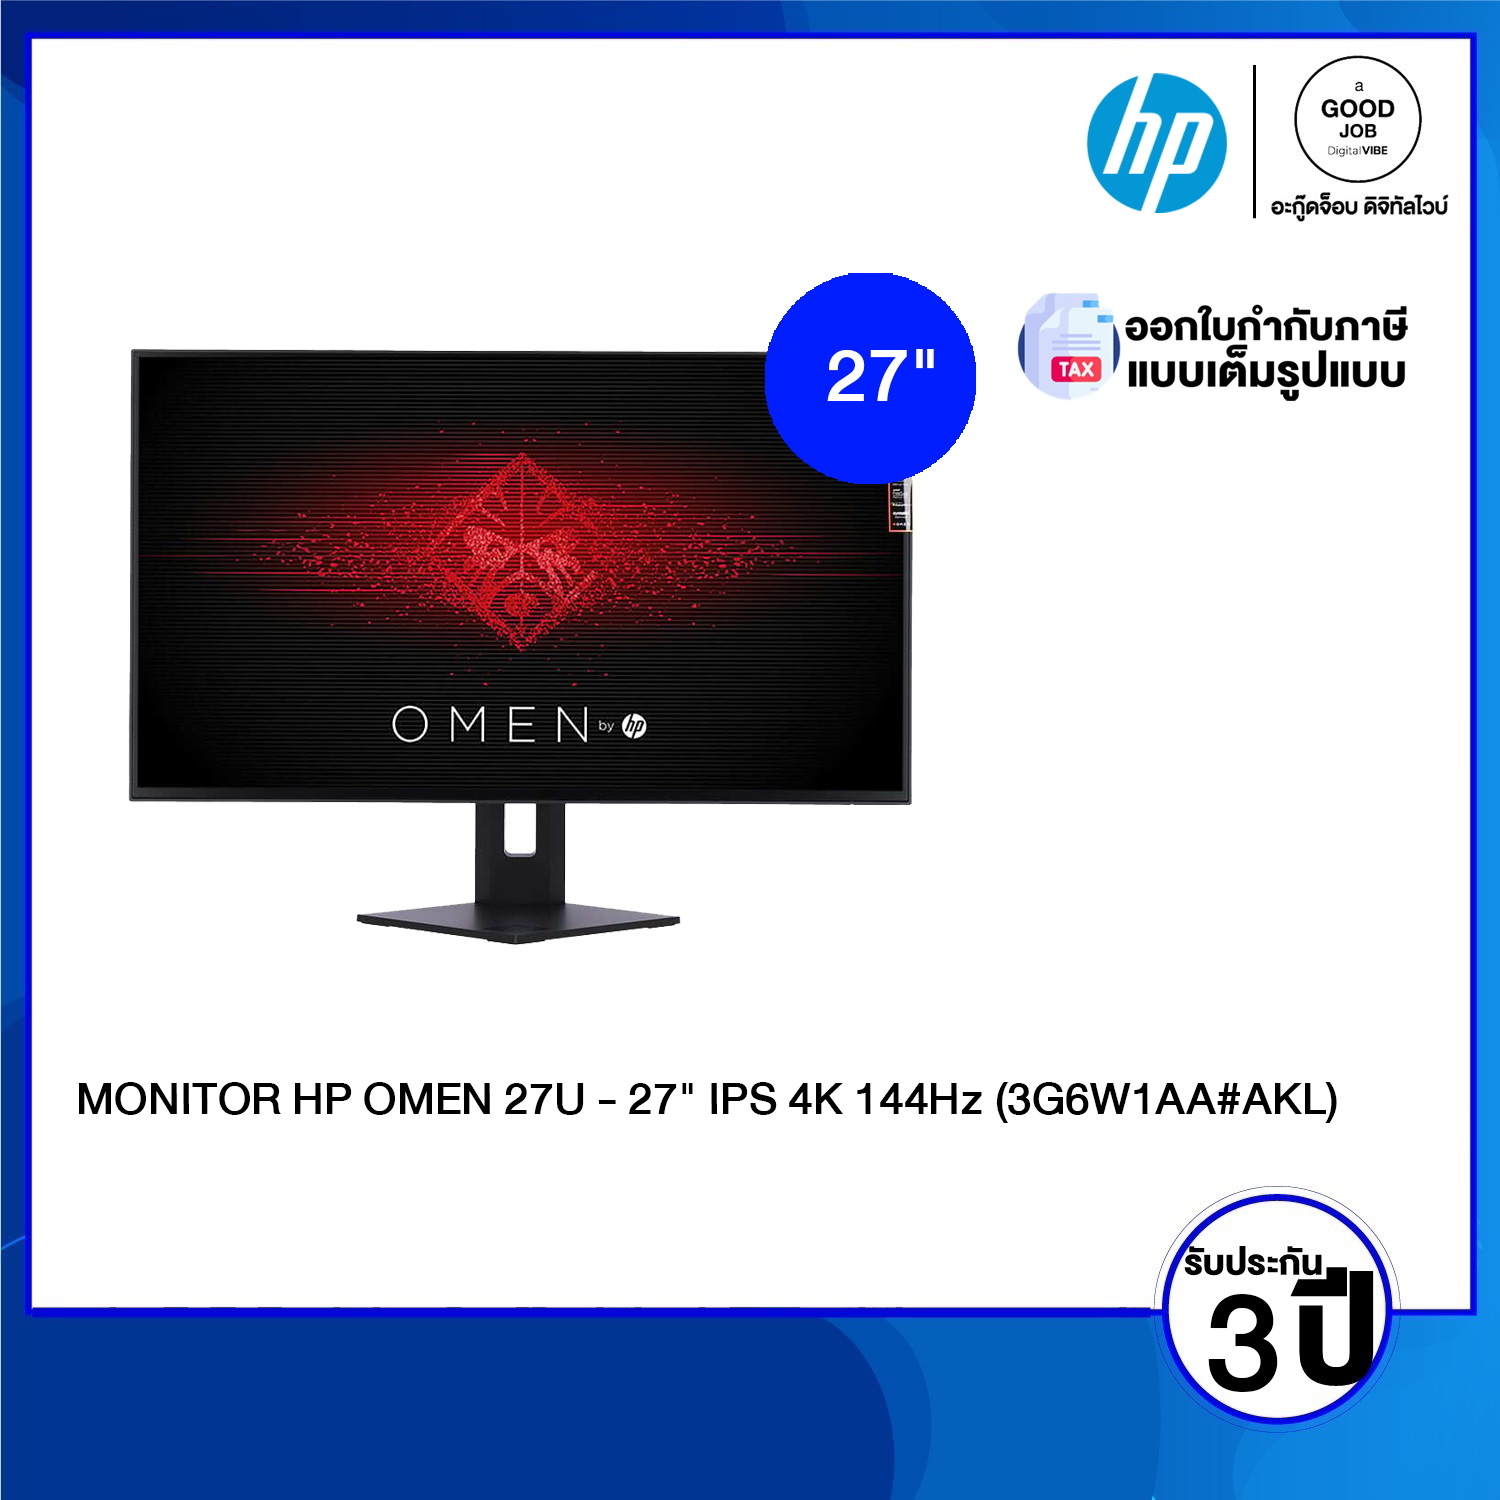 HP OMEN 27u 27 inch 4K UHD Gaming Monitor - 27 (3G6W1AA) - ร้านค้า   ประเทศไทย